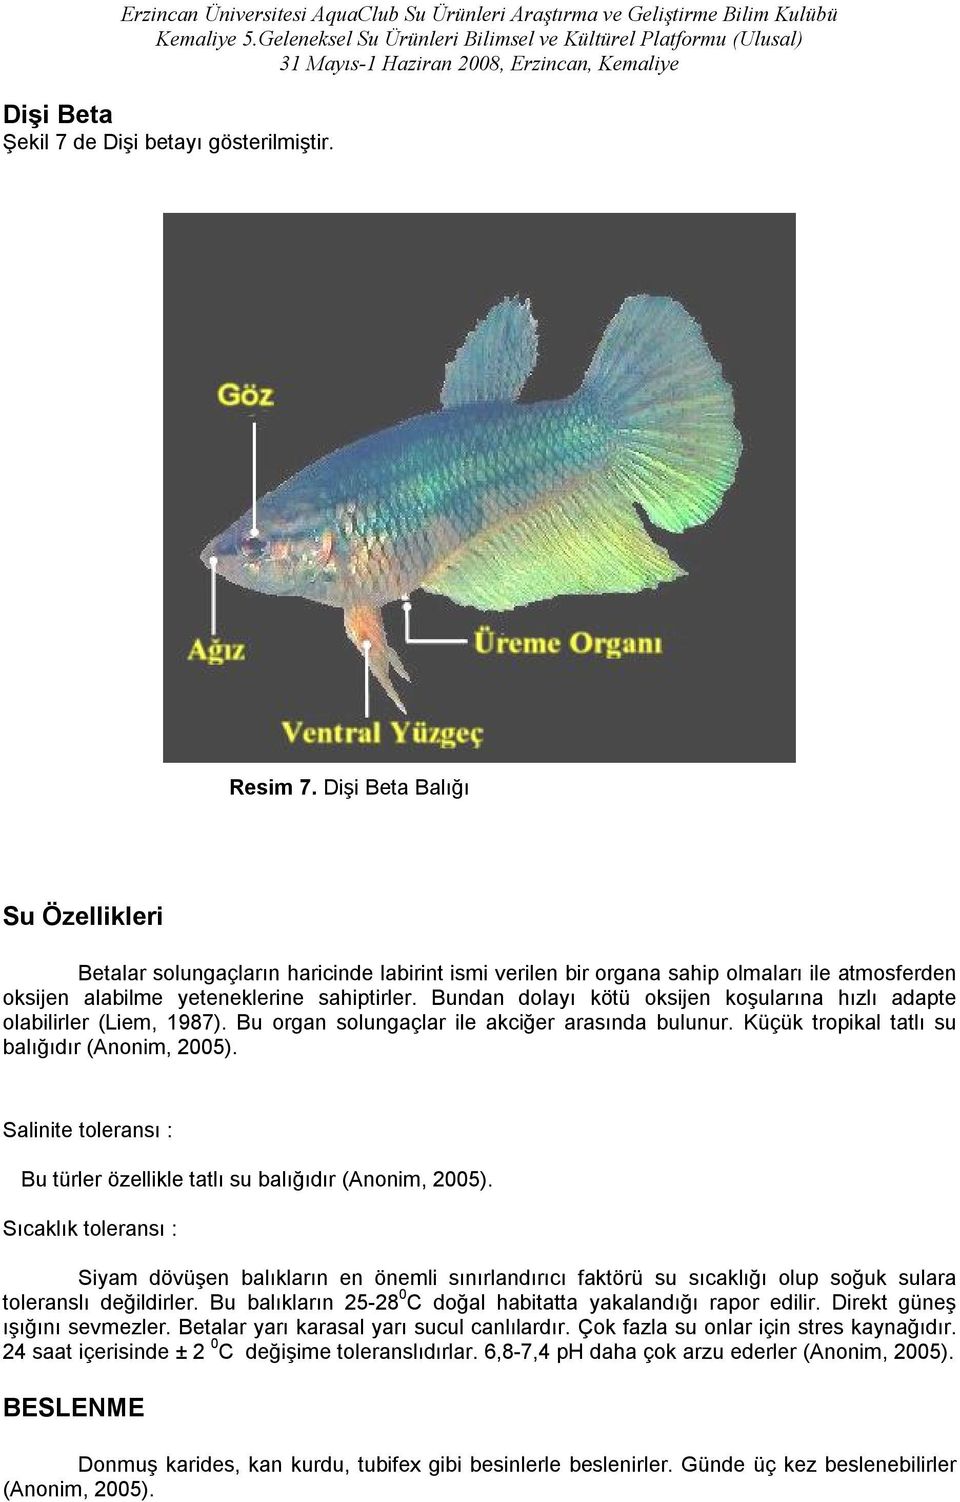 Bundan dolayı kötü oksijen koşularına hızlı adapte olabilirler (Liem, 1987). Bu organ solungaçlar ile akciğer arasında bulunur. Küçük tropikal tatlı su balığıdır (Anonim, 2005).